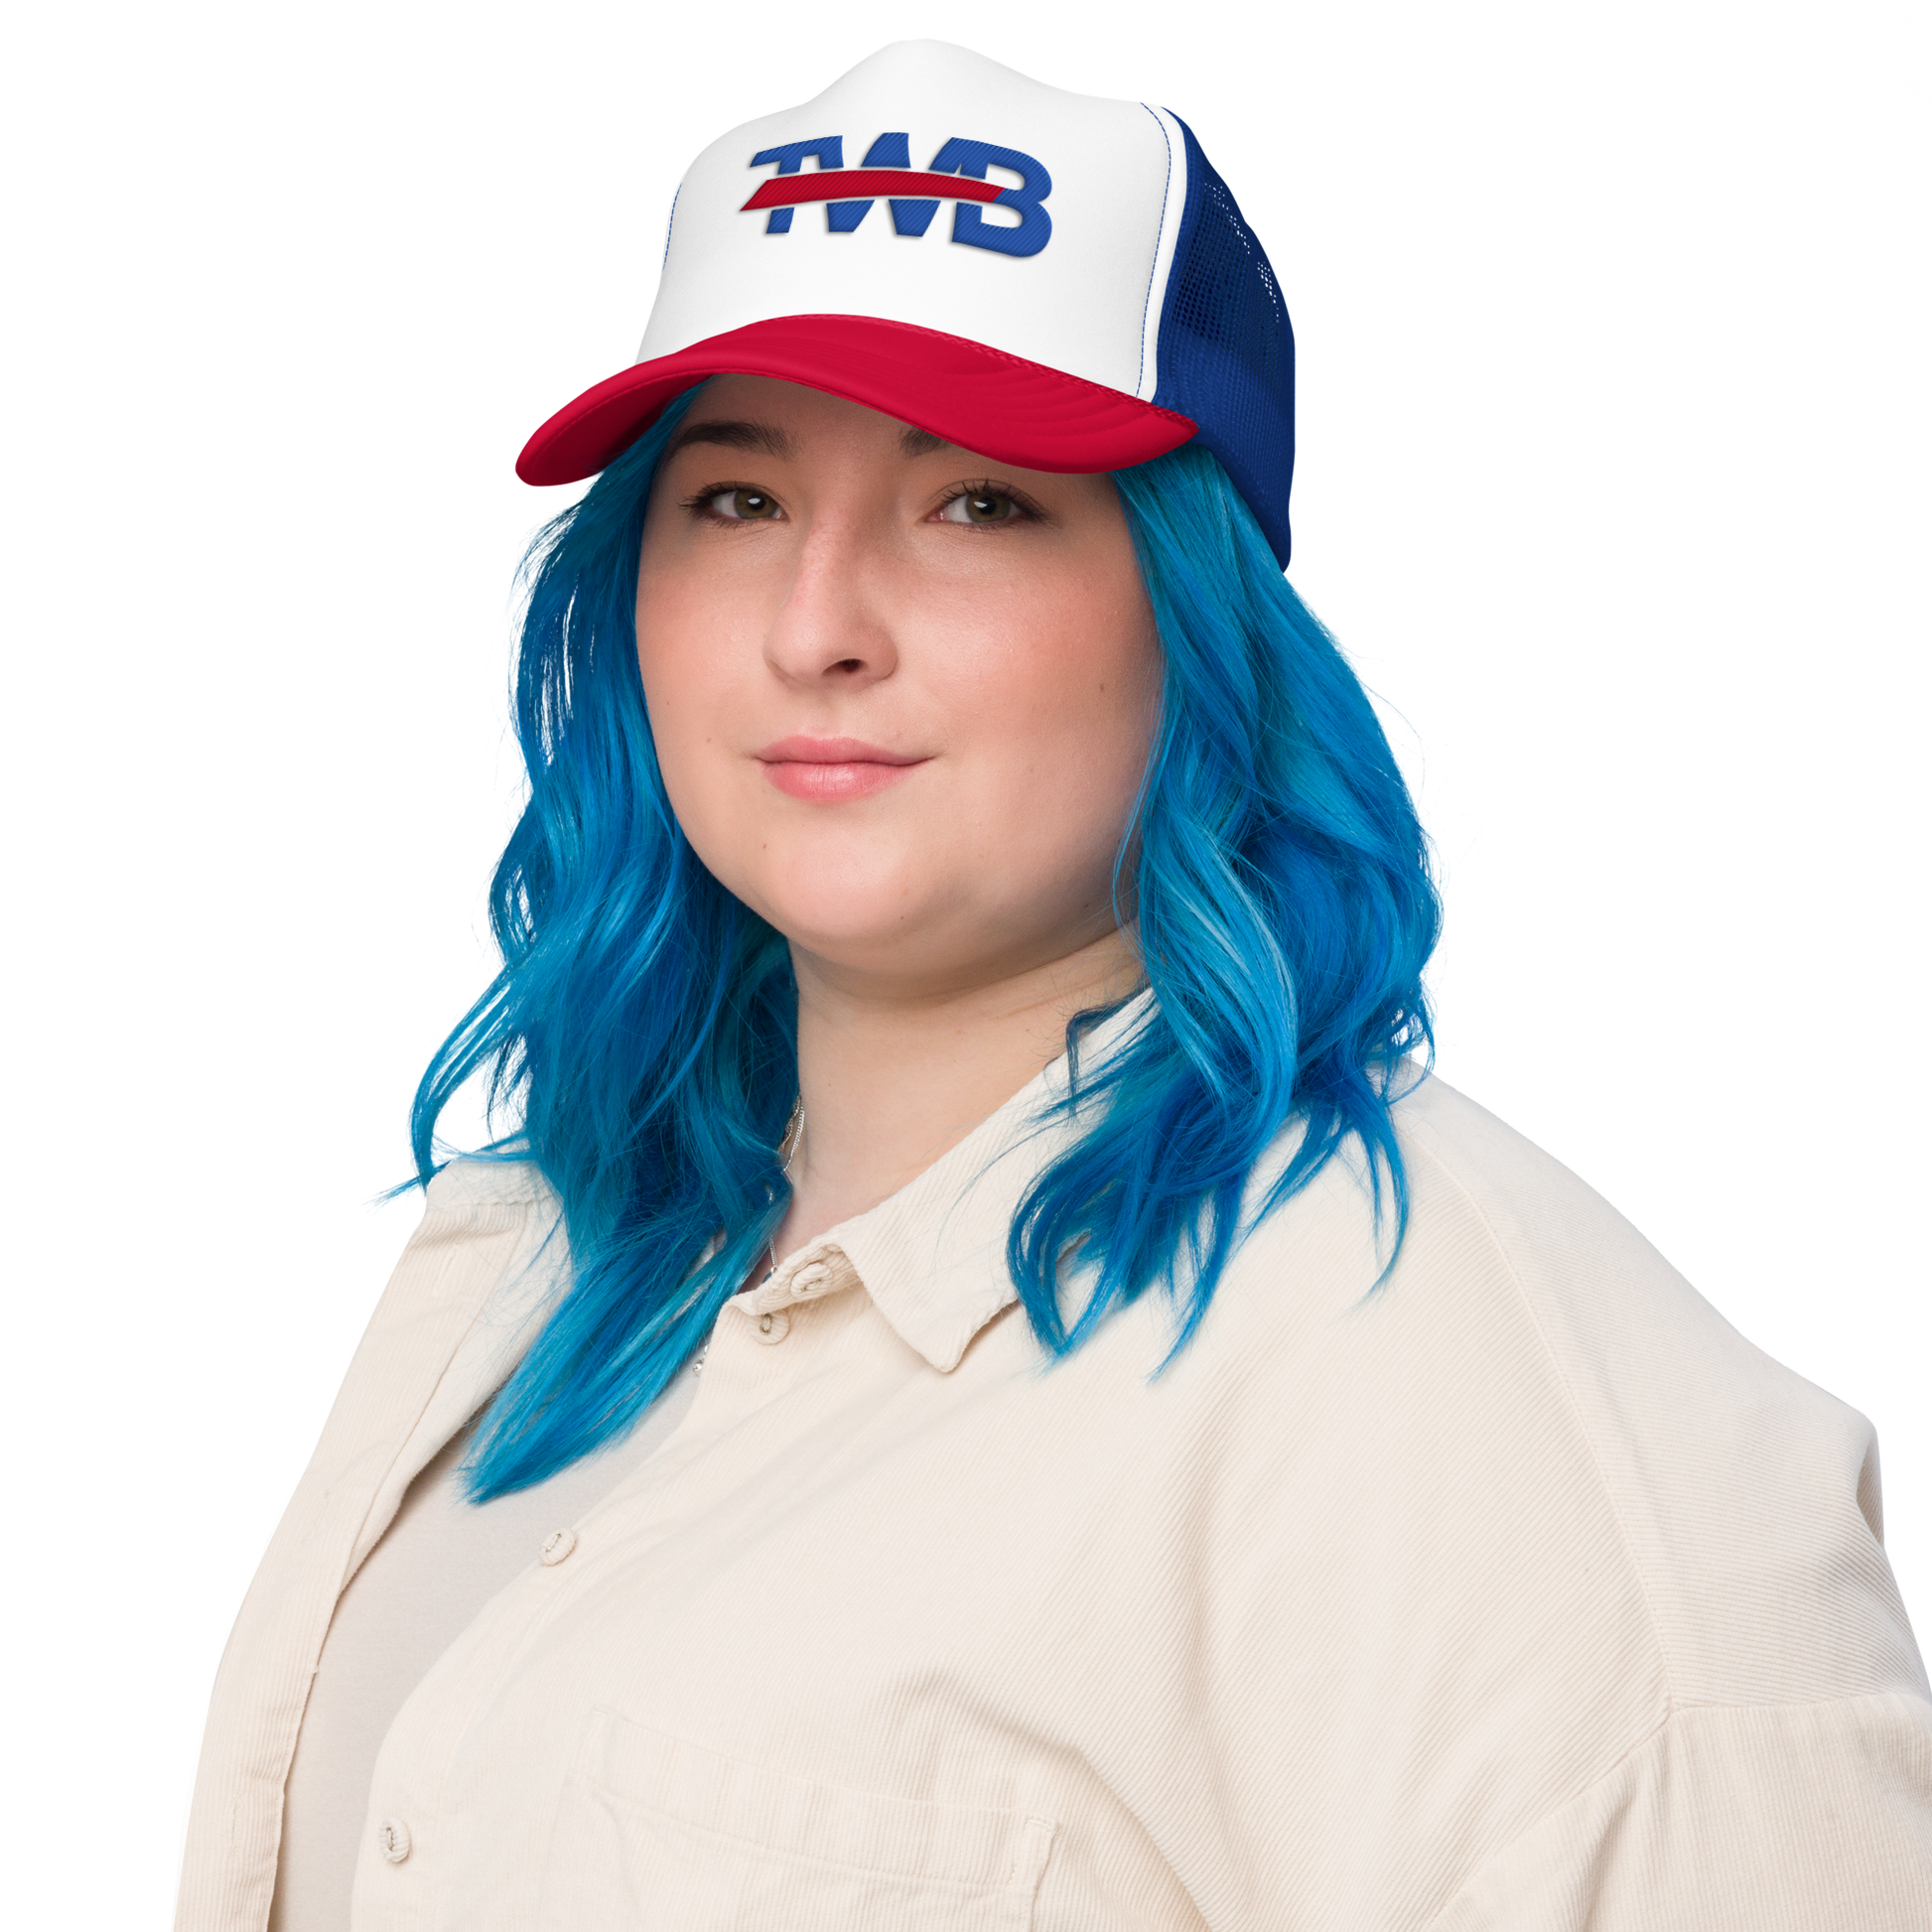 "TWB" Trucker Hat - Woman Side